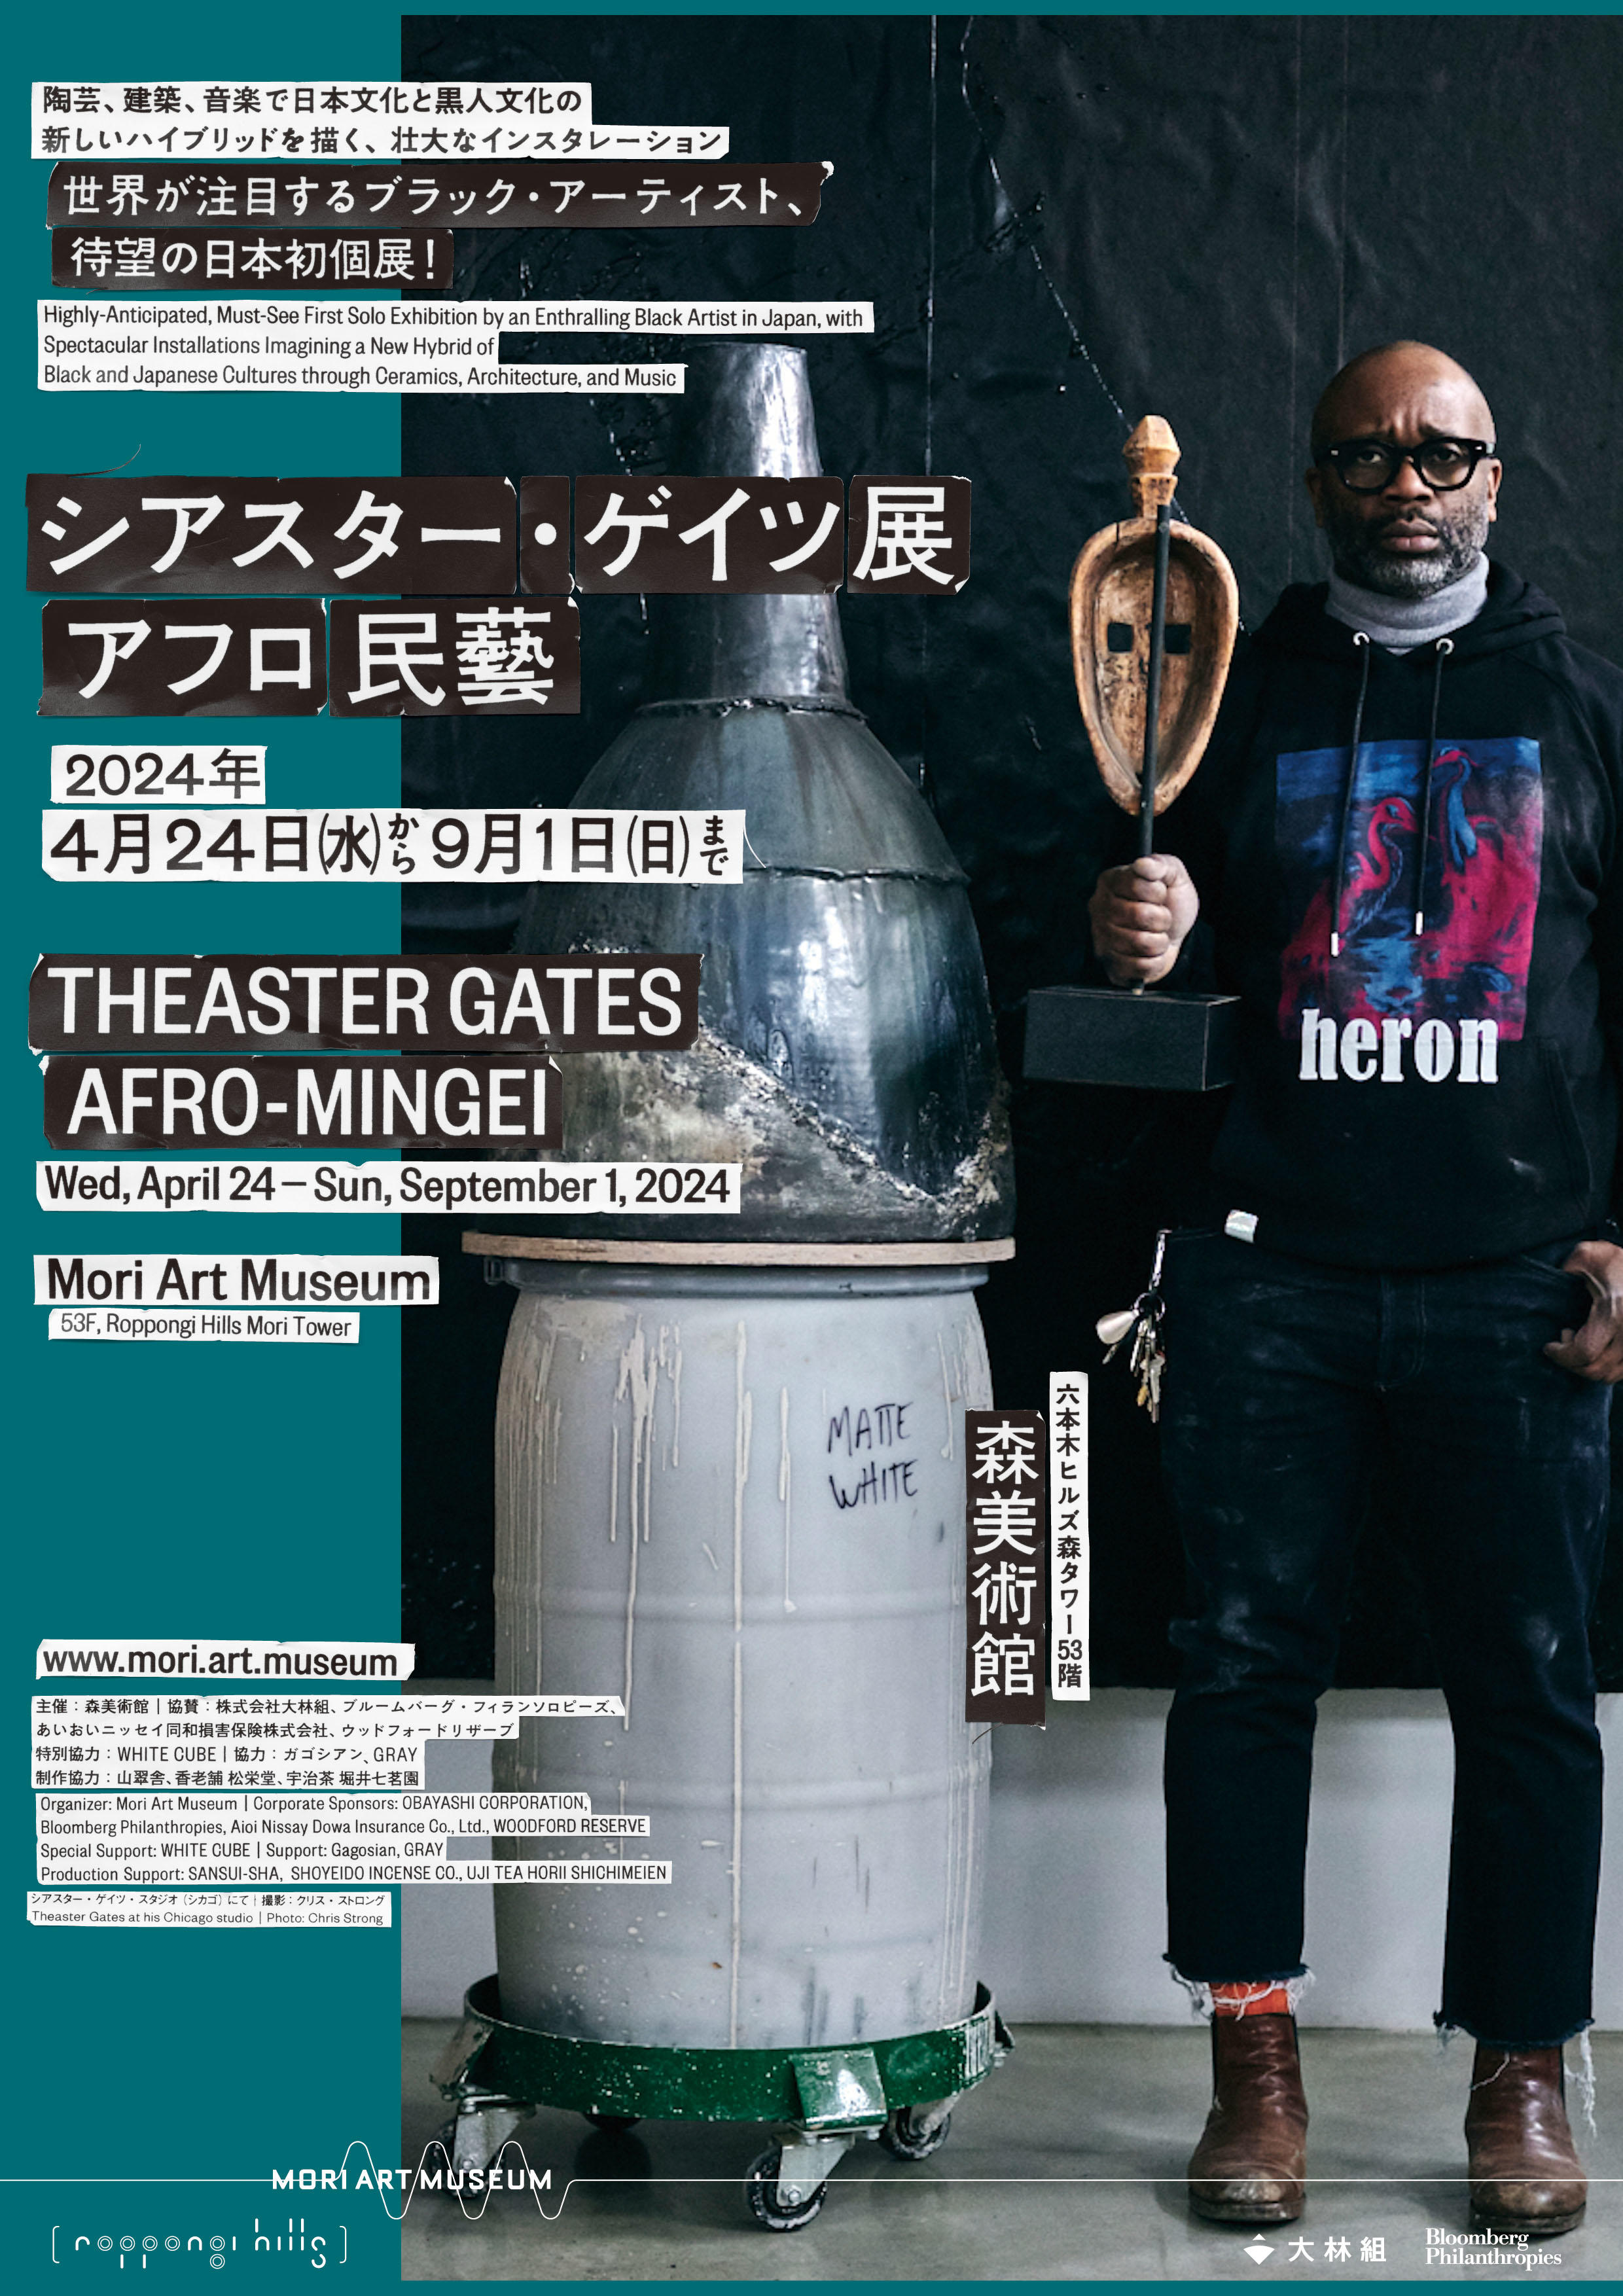 Theaster Gates: Afro-Mingei